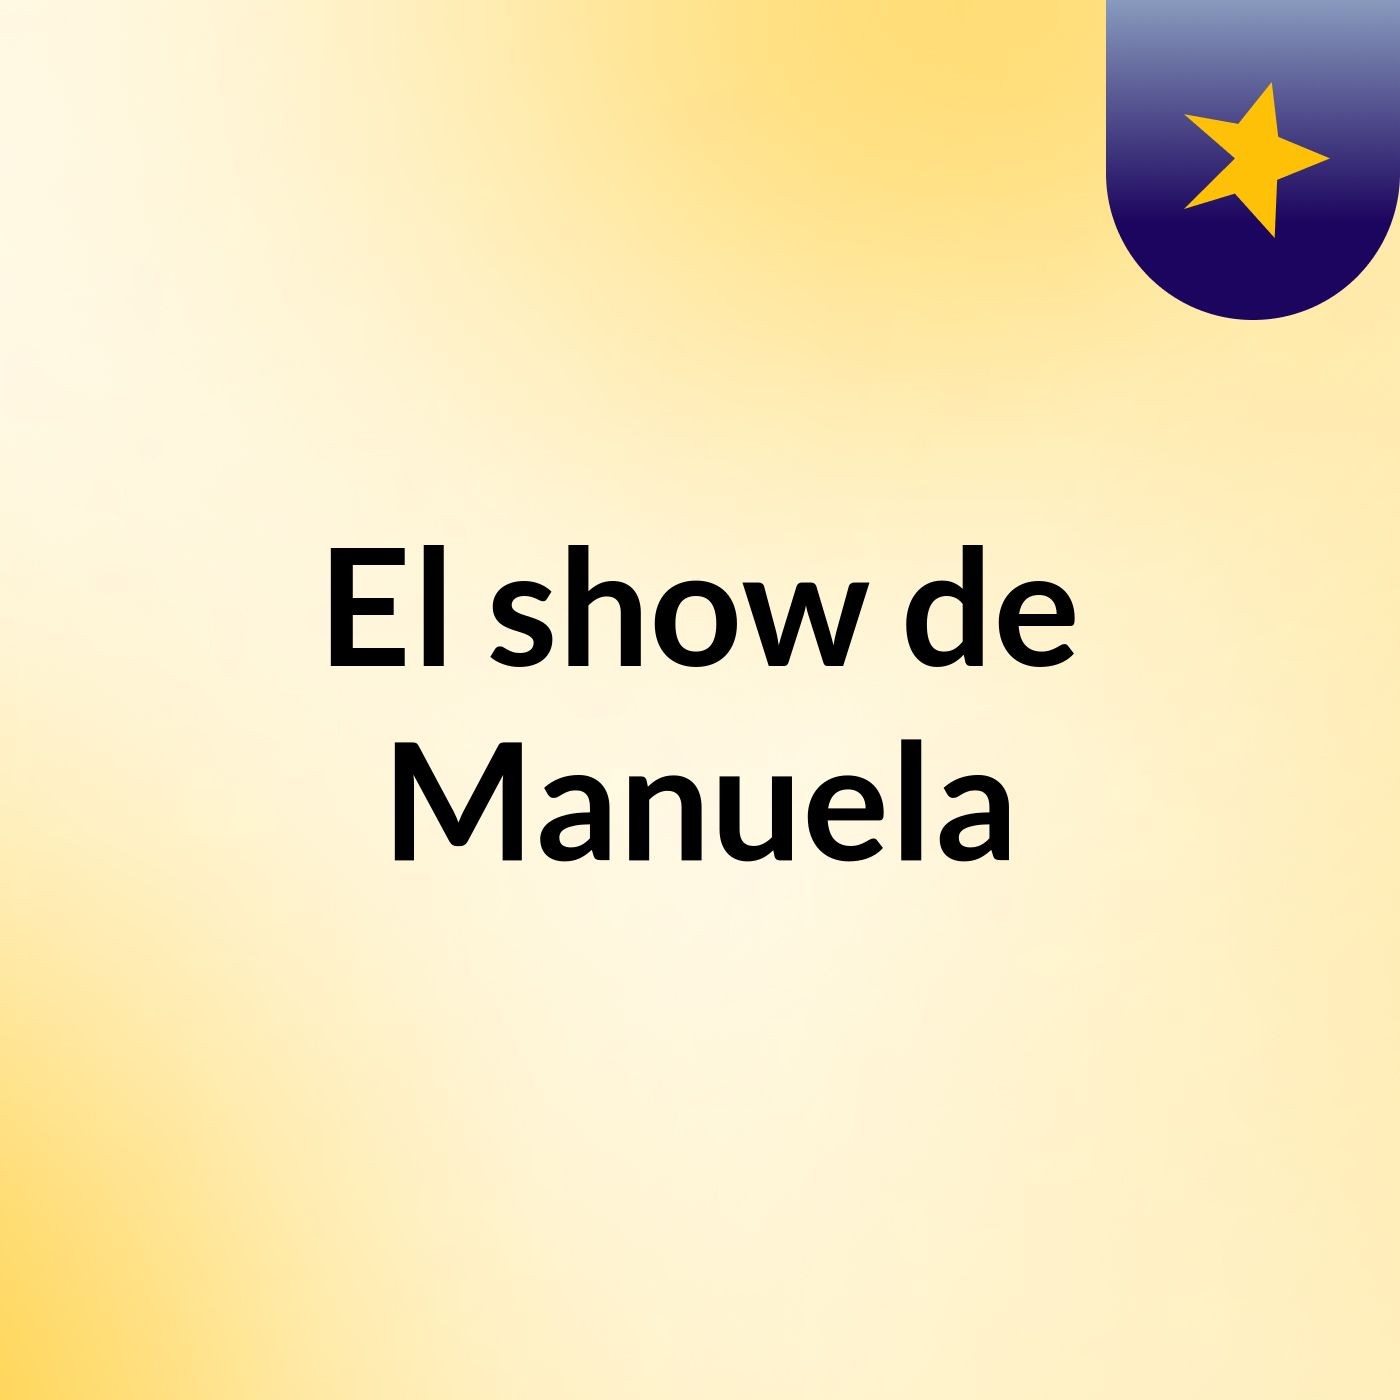 El show de Manuela